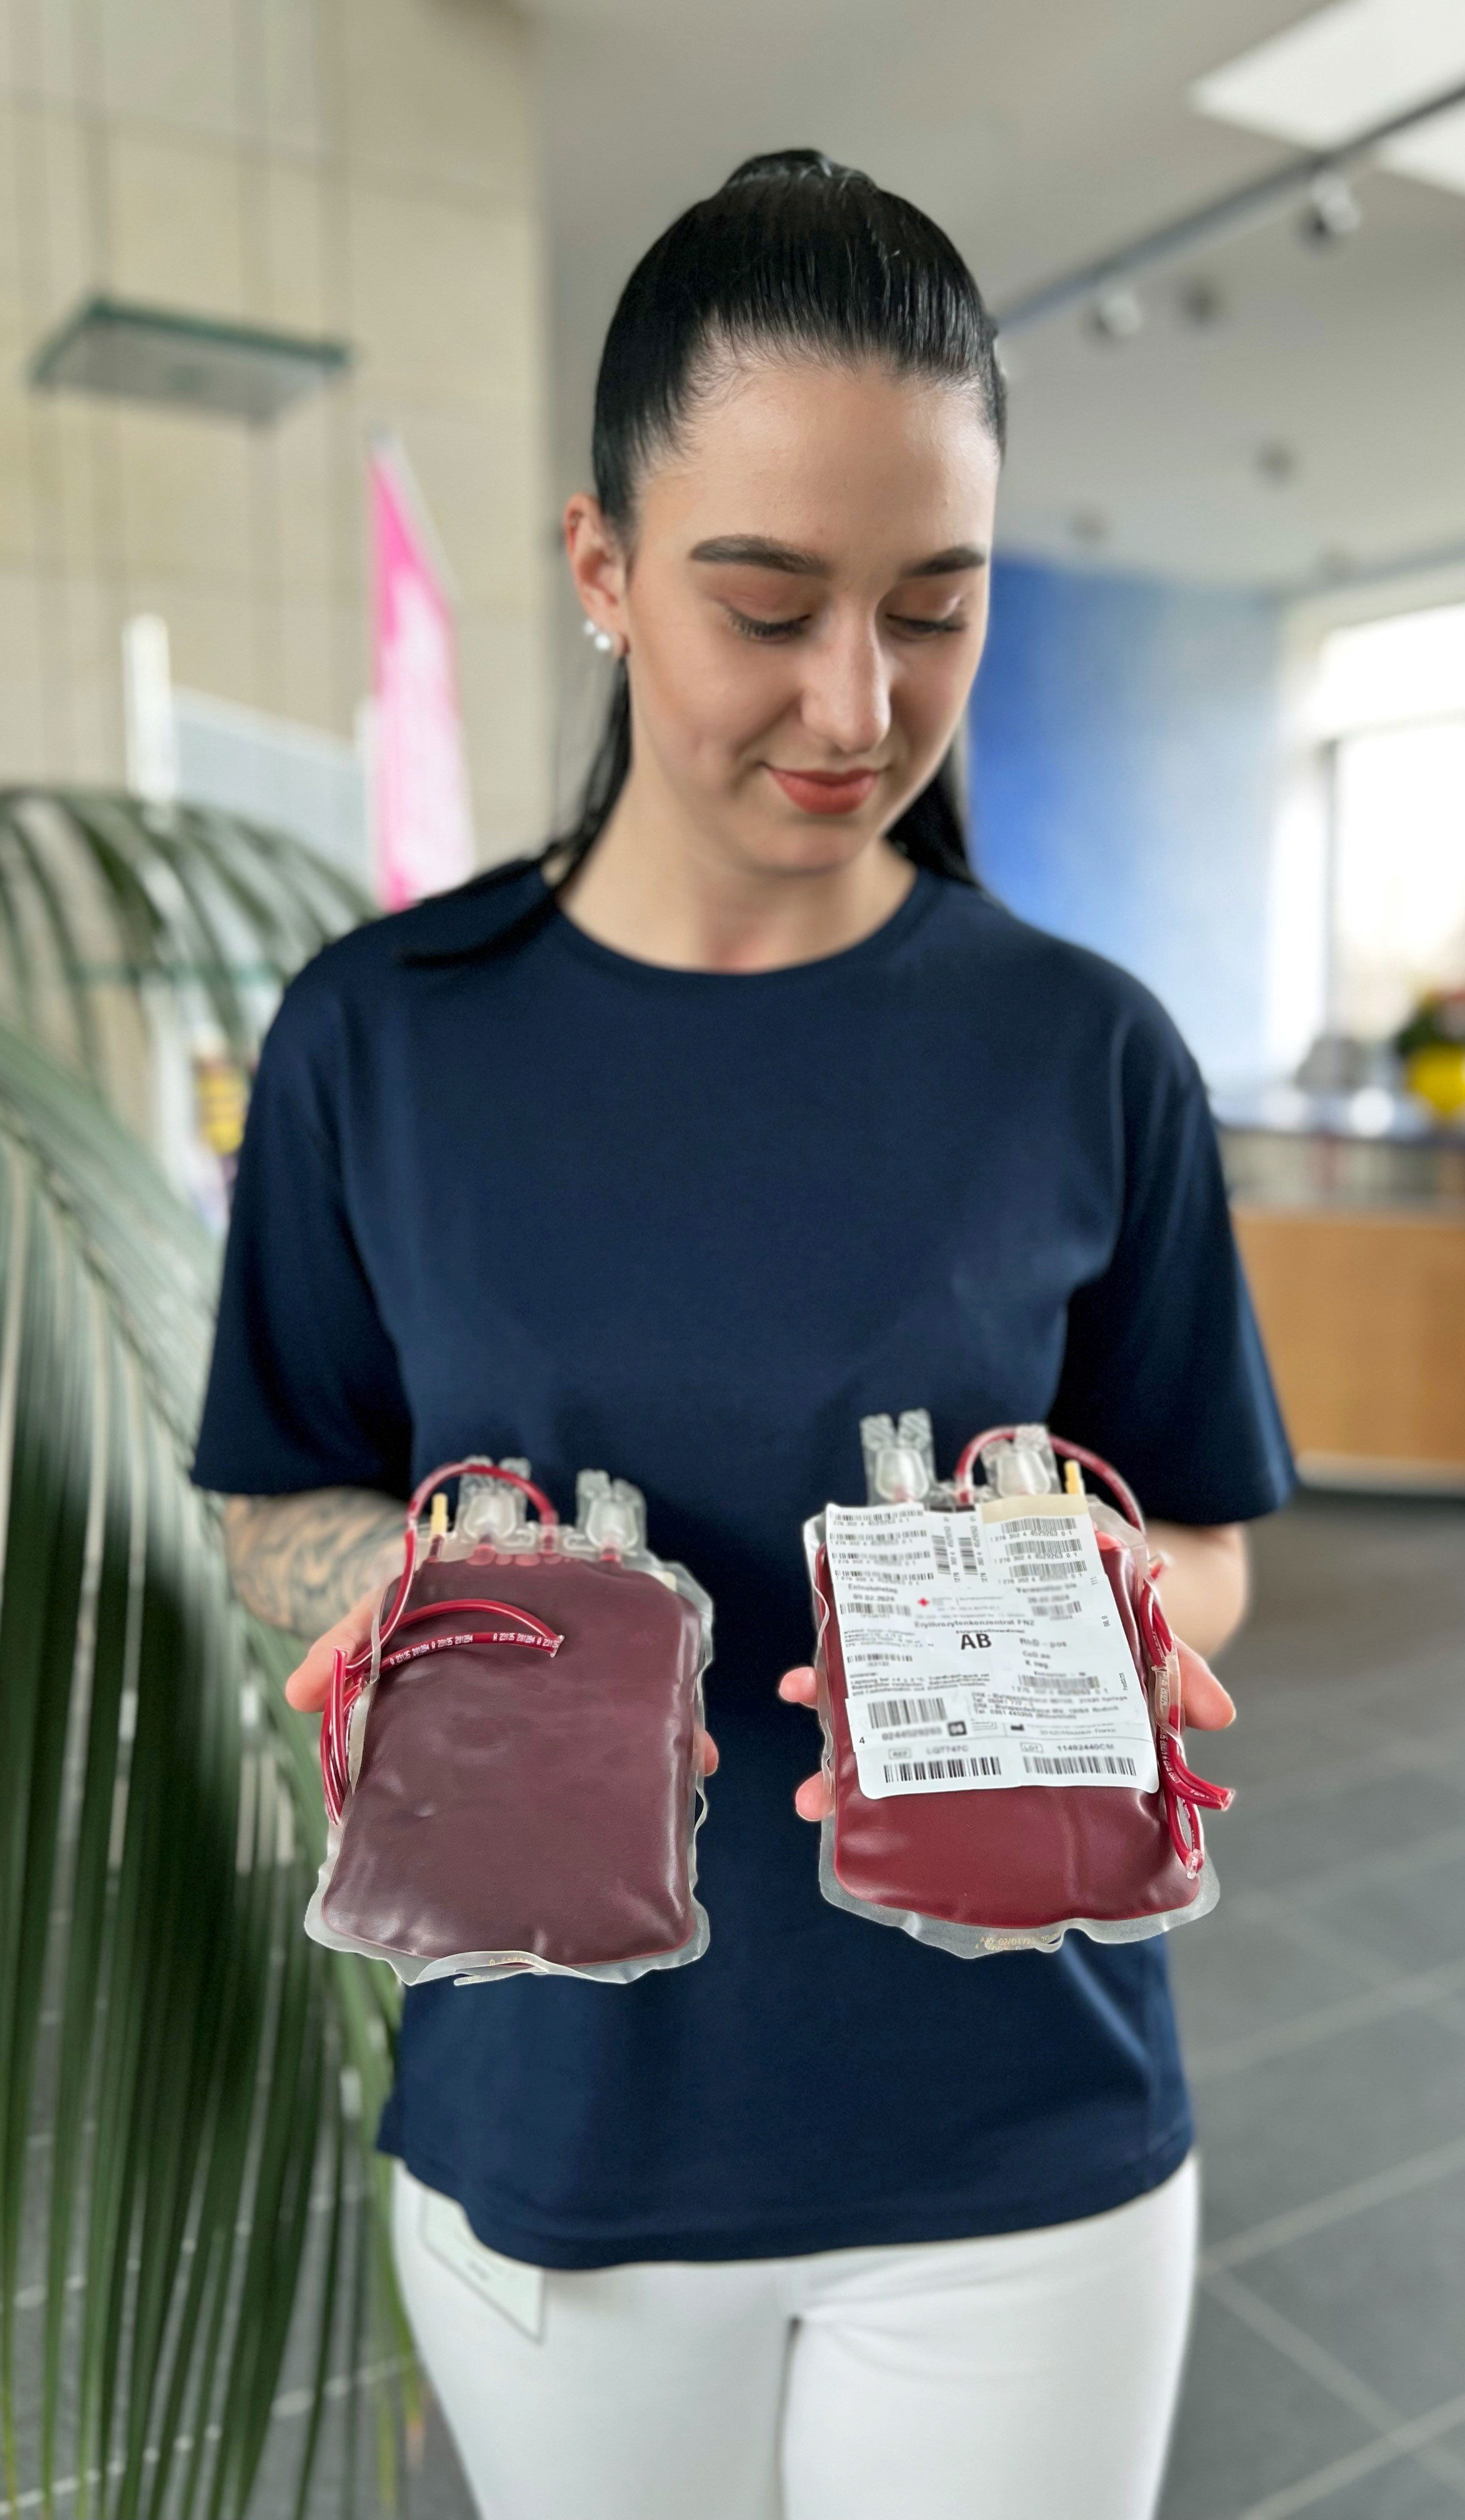 Mitarbeiterin zeigt zwei Blutbeutel